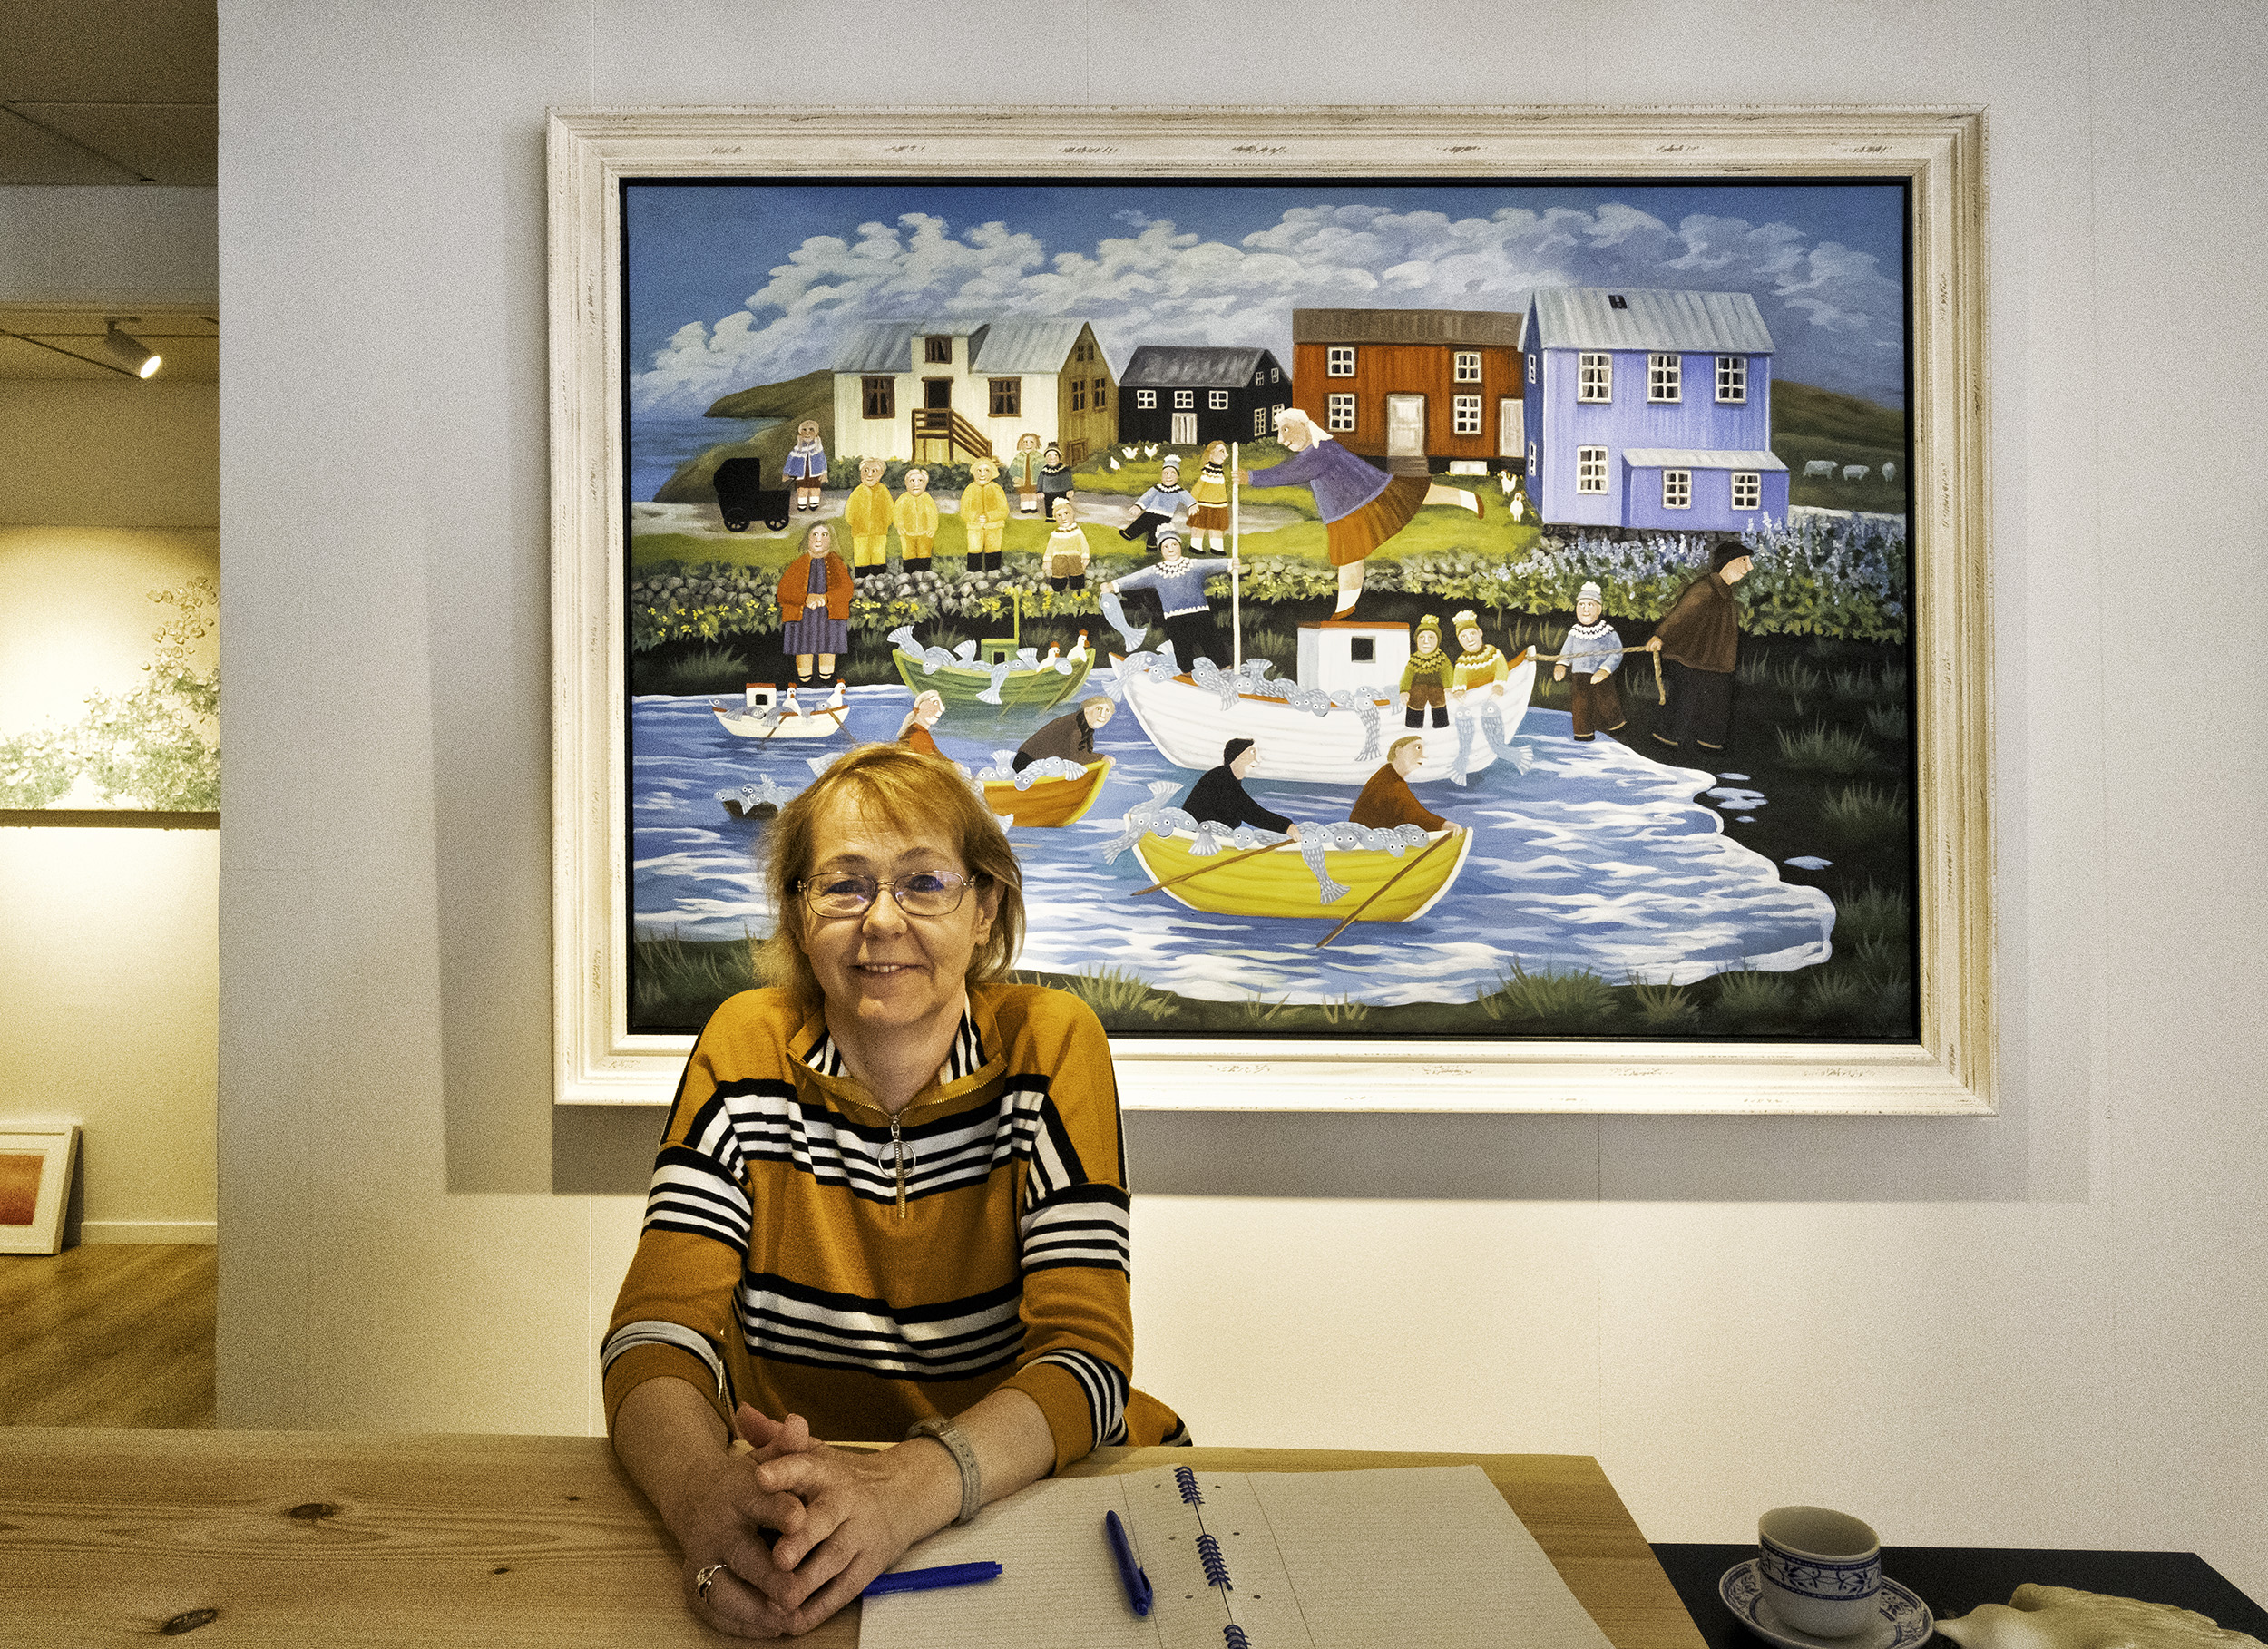 The artist Gunnella in her gallery in Reykjavik